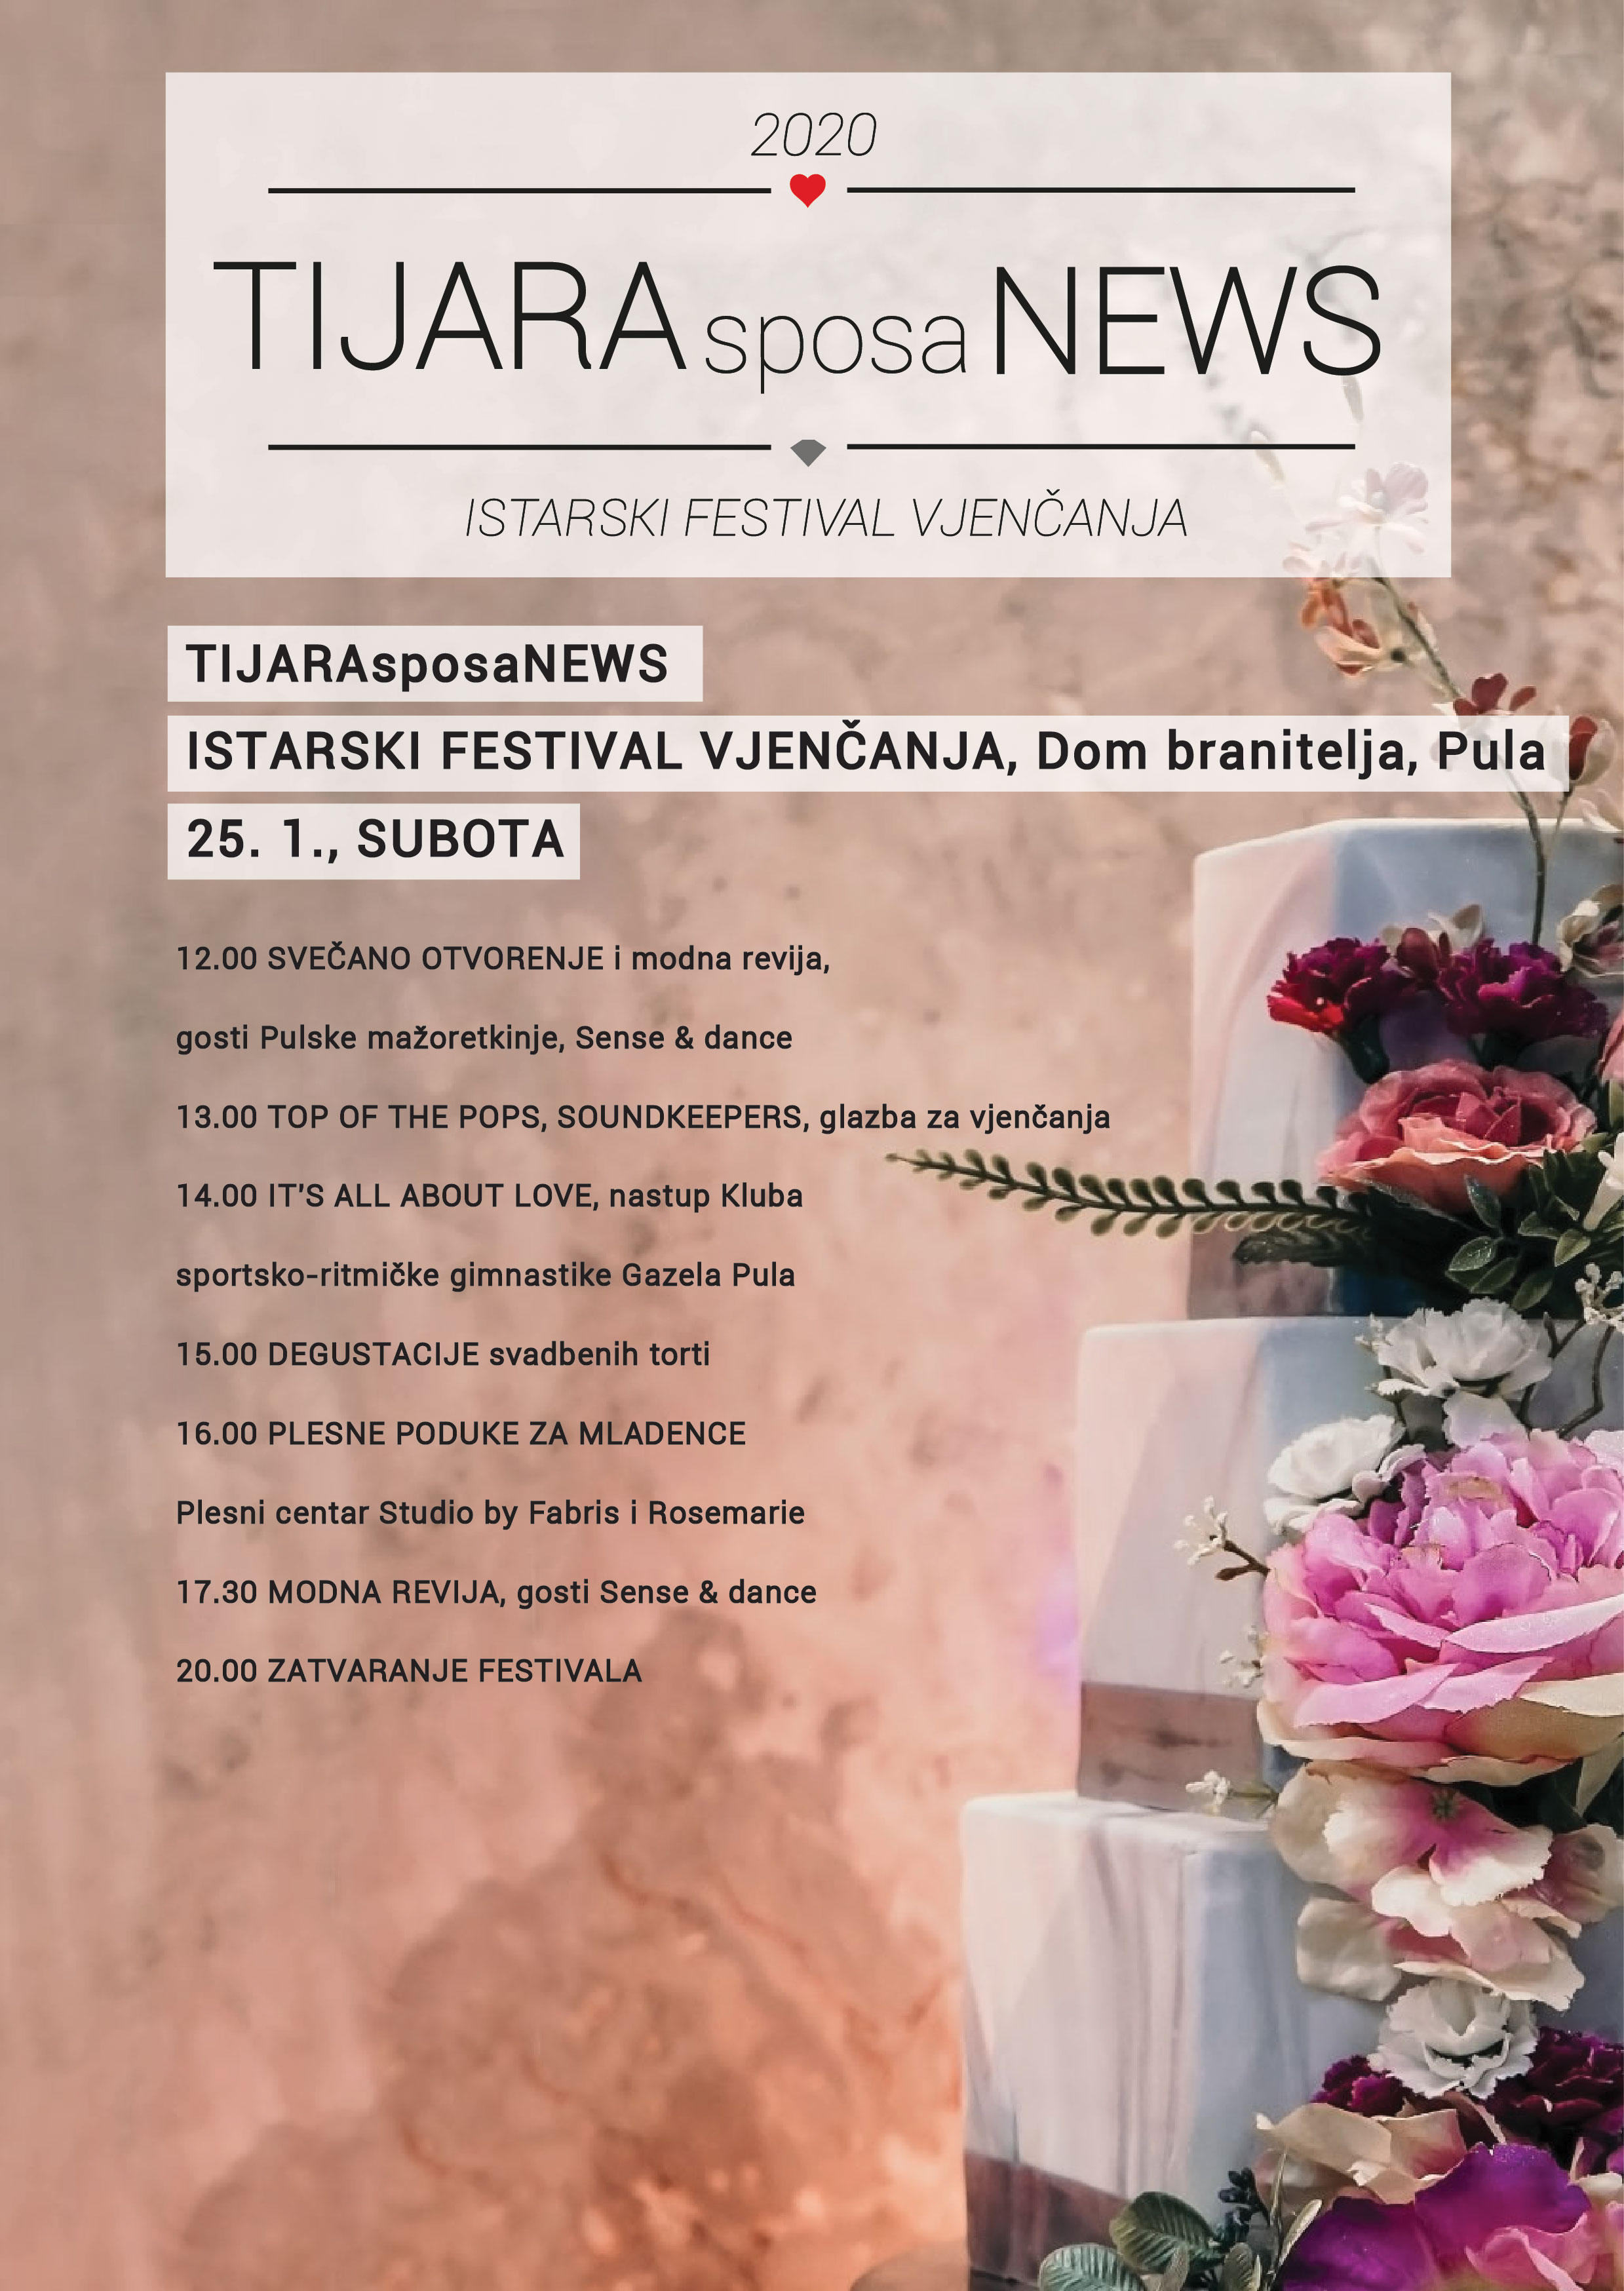 Istarski Festival Vjenčanja TIJARAsposaNEWS u Puli 25. i 26. siječnja